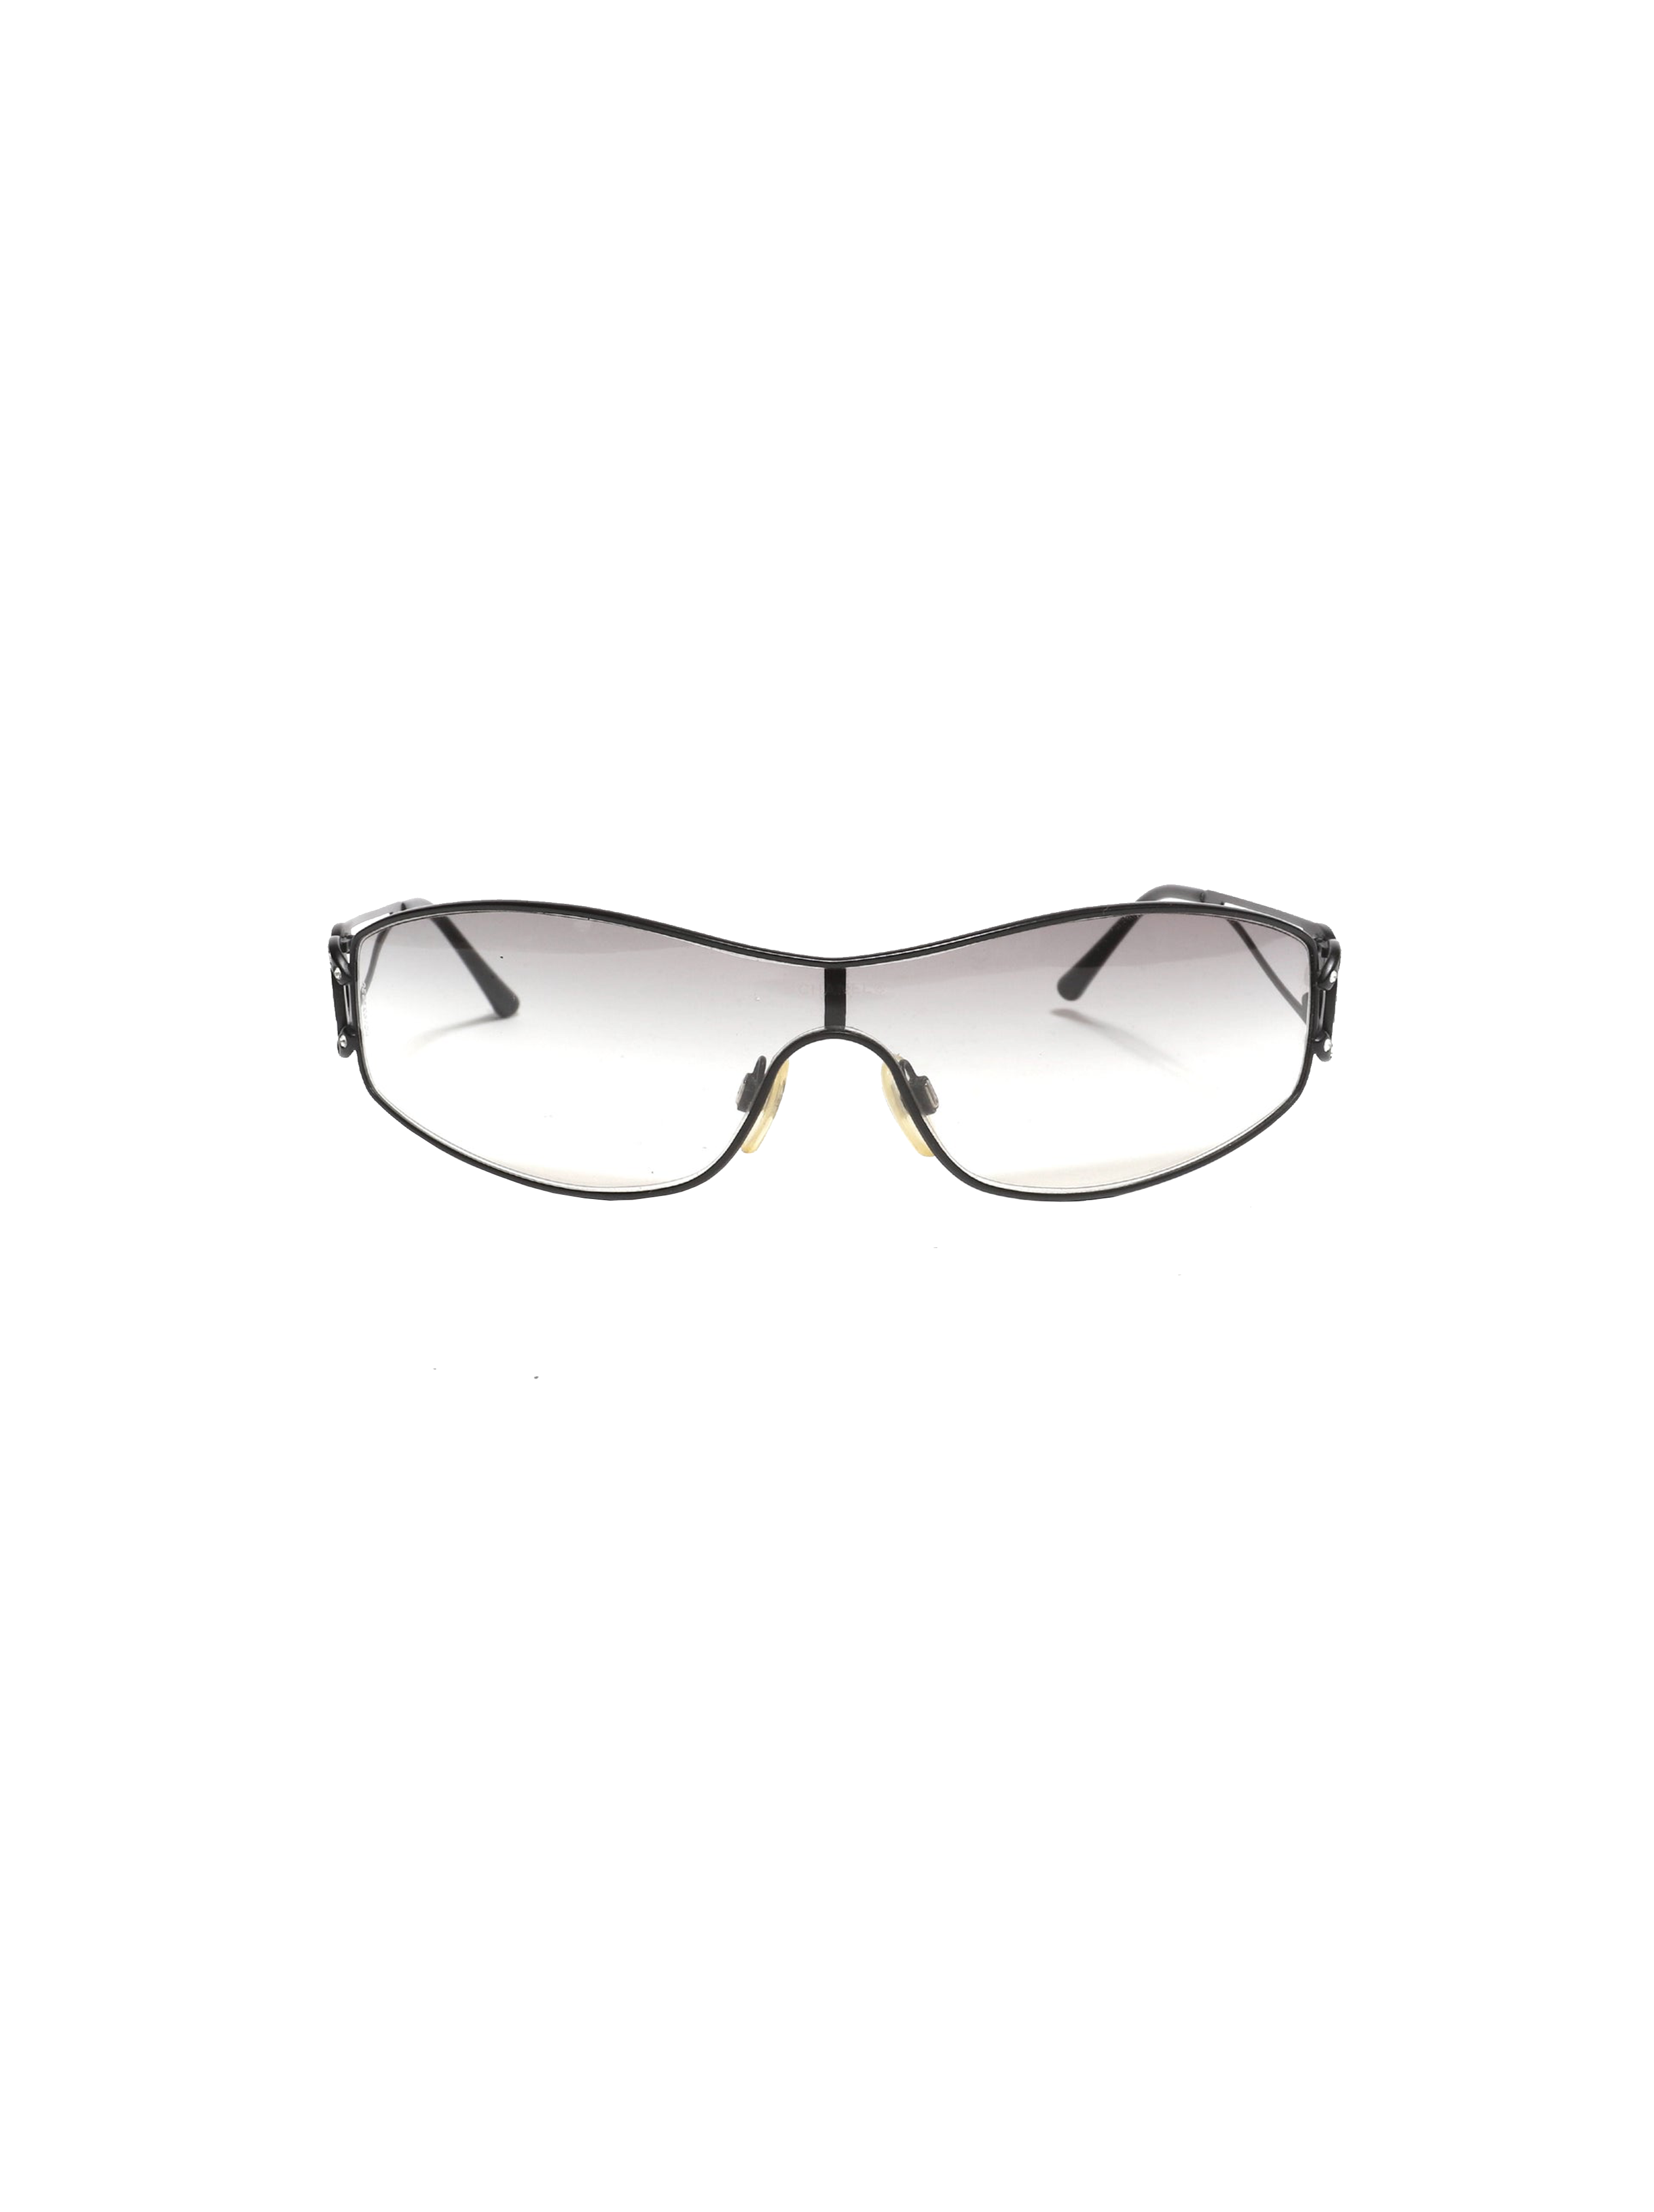 Chanel Cc Logo Silver Eyewear Sunglasses